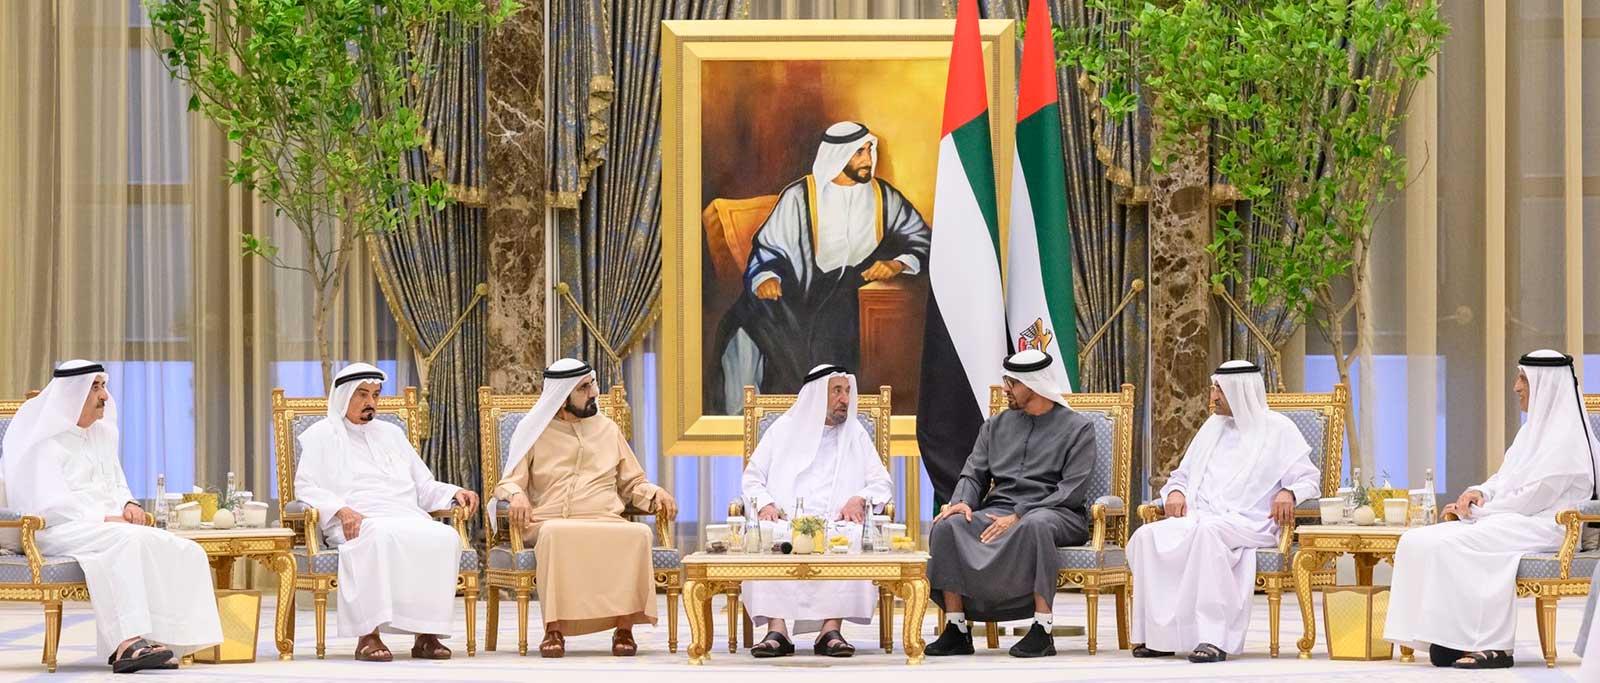 رئيس الدولة يستقبل محمد بن راشد والحكام والشيوخ في قصر الوطن